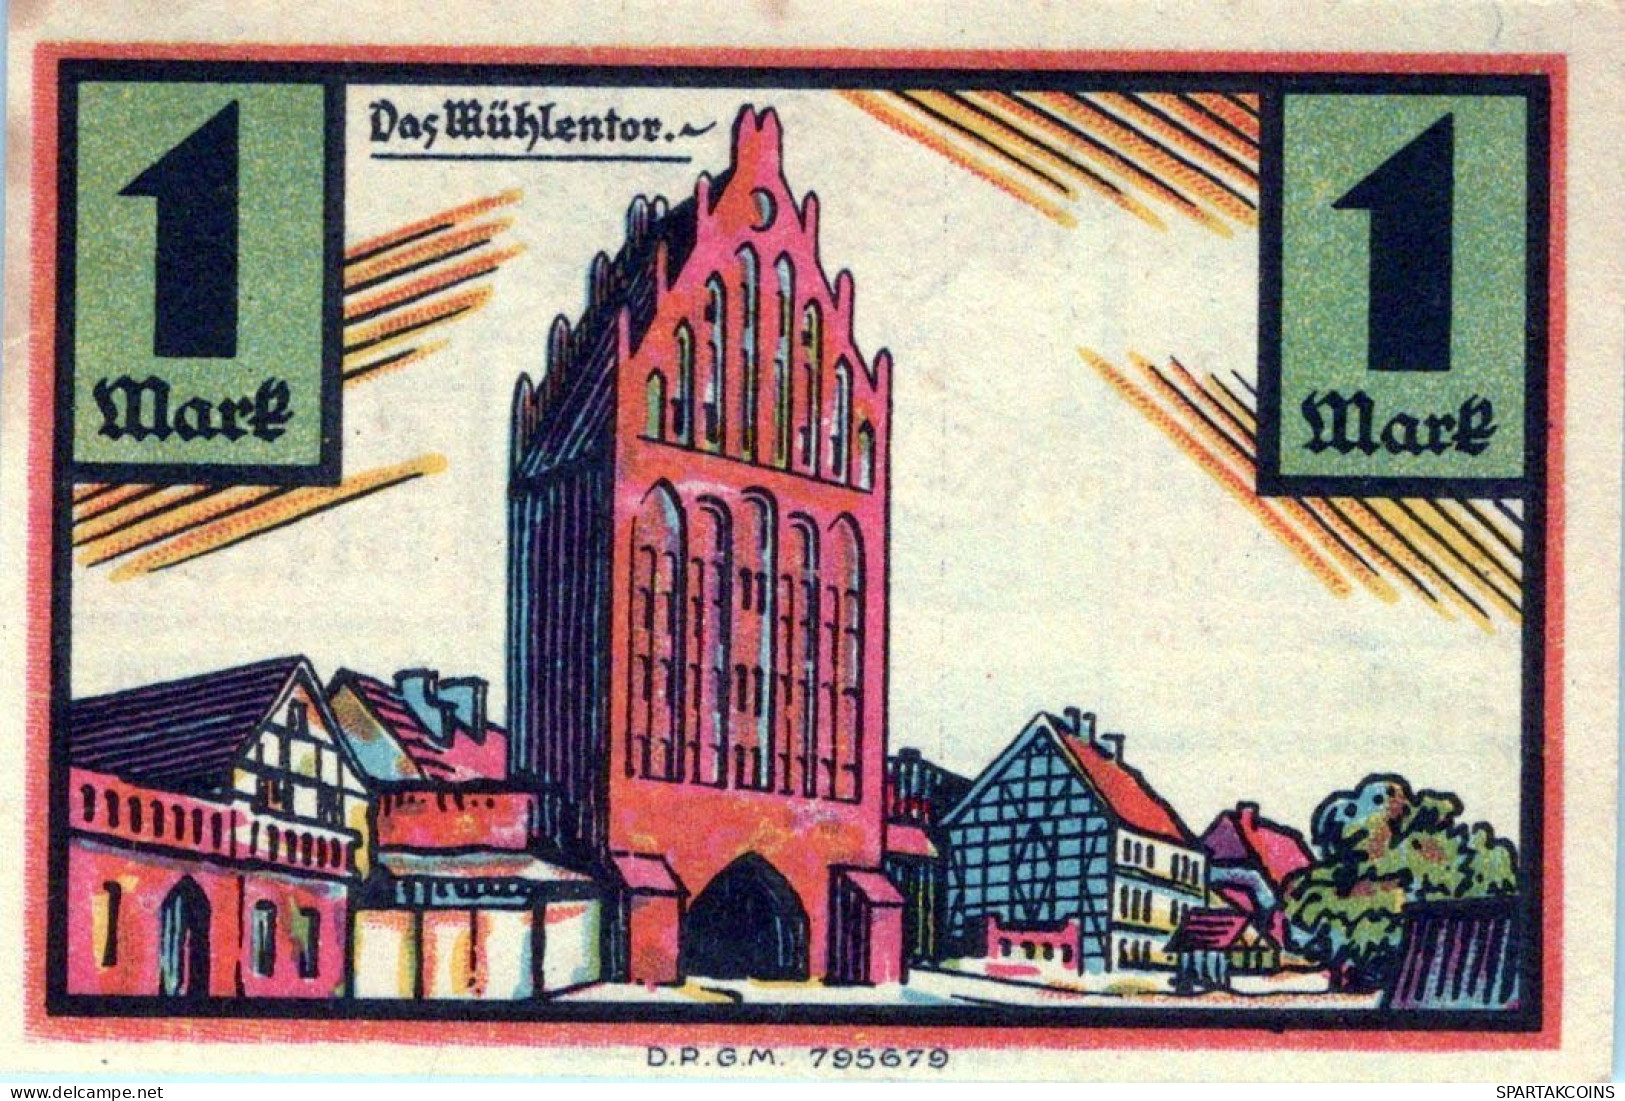 1 MARK 1922 Stadt STOLP Pomerania UNC DEUTSCHLAND Notgeld Banknote #PD344 - Lokale Ausgaben